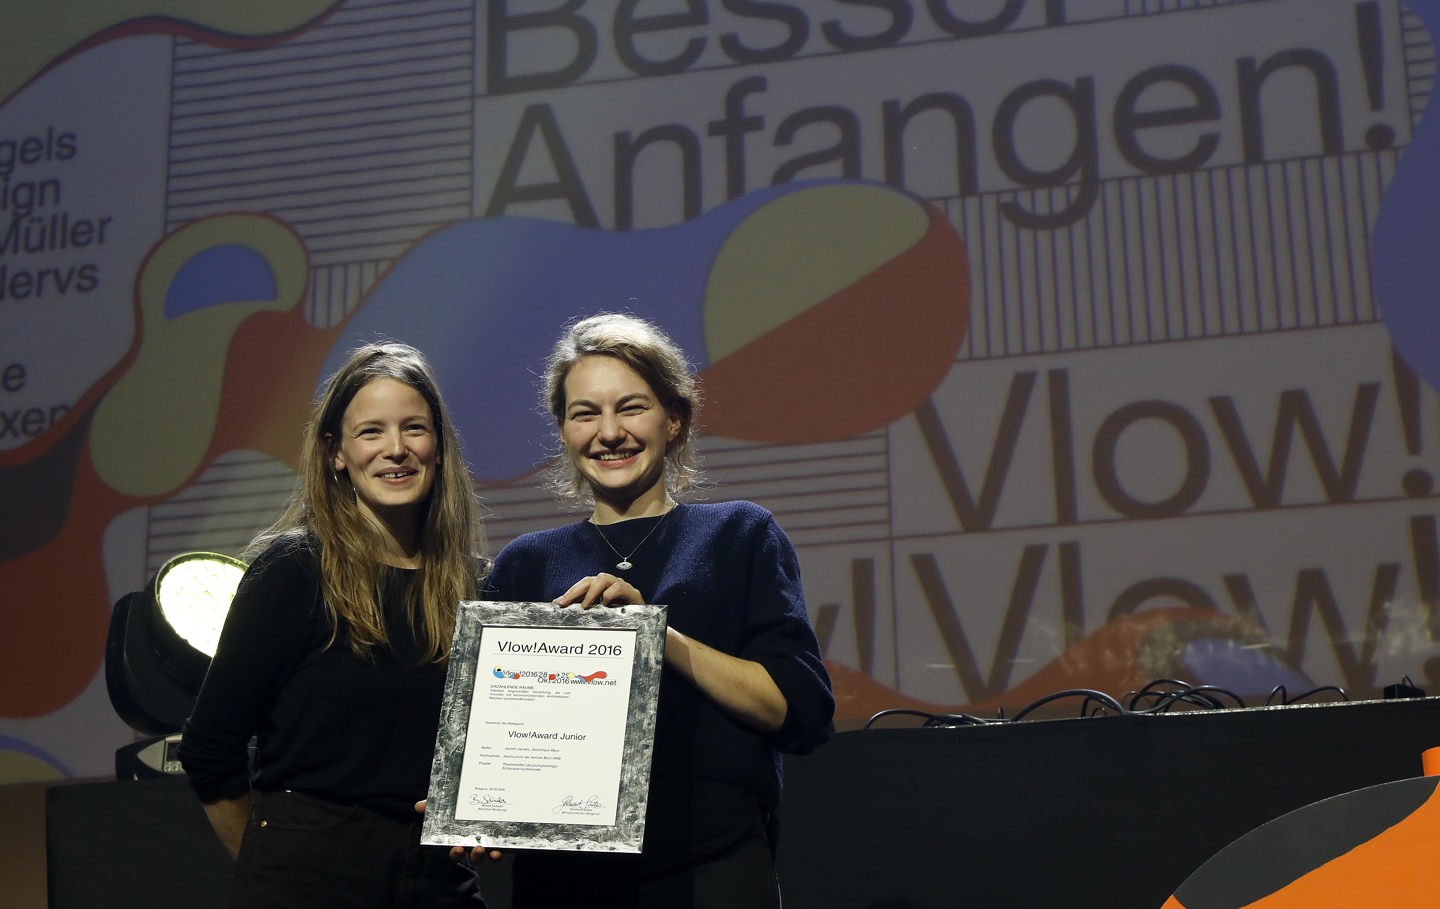 Gewinner des Vlow!Junior Awards - Hochschule der Künste Bern (Jasmin Jacobs und Dominique Wyss)